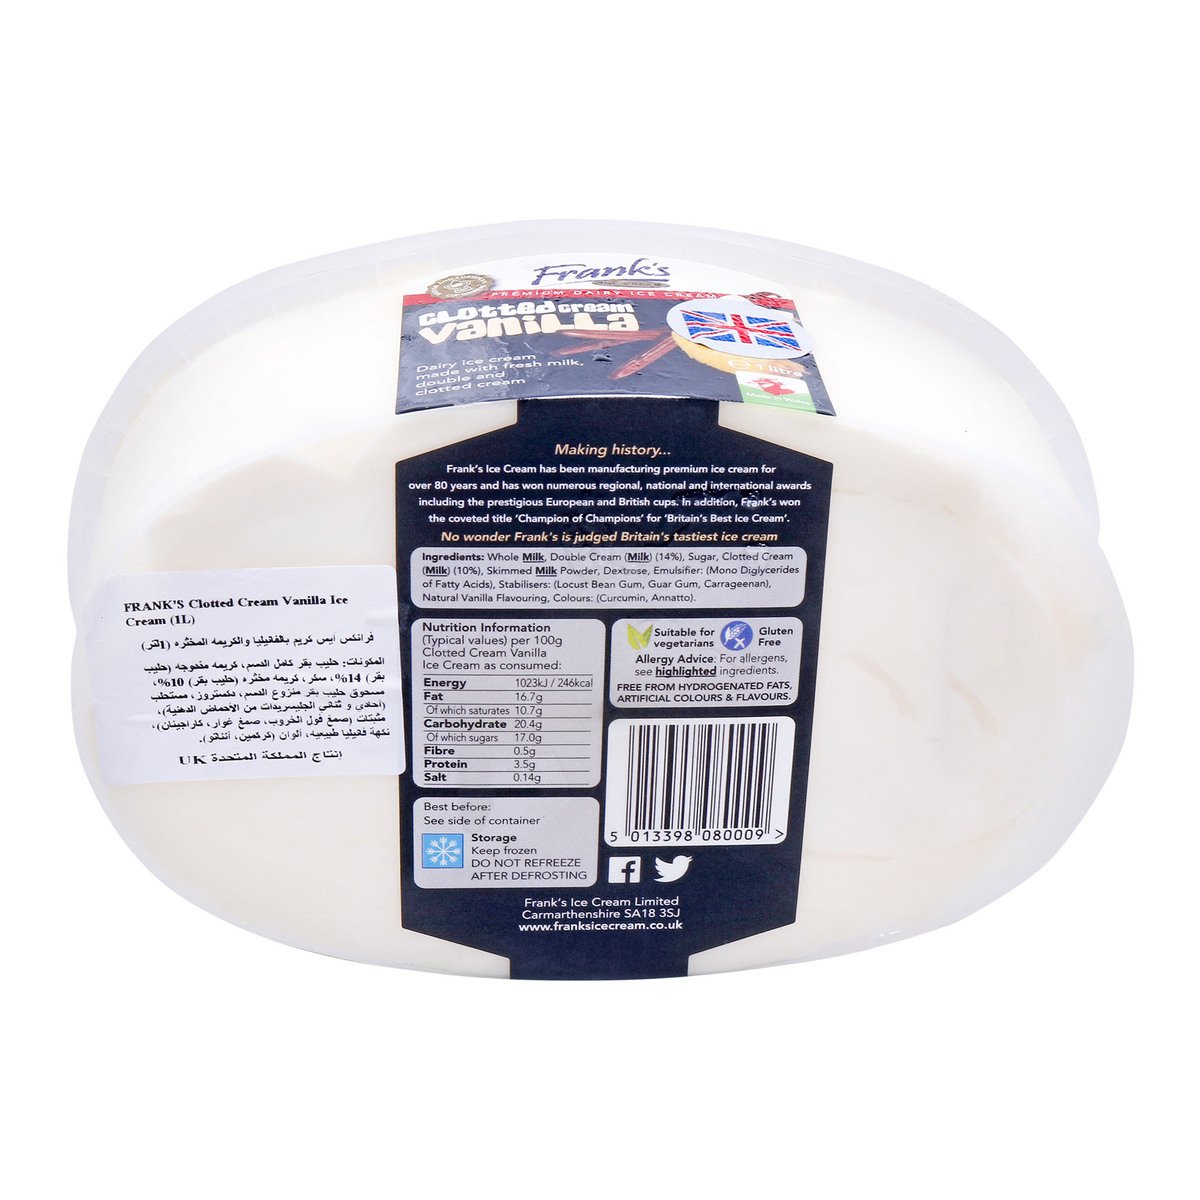 Frank's Premium Dairy Ice Cream Clotted Cream Vanilla 1 Litre